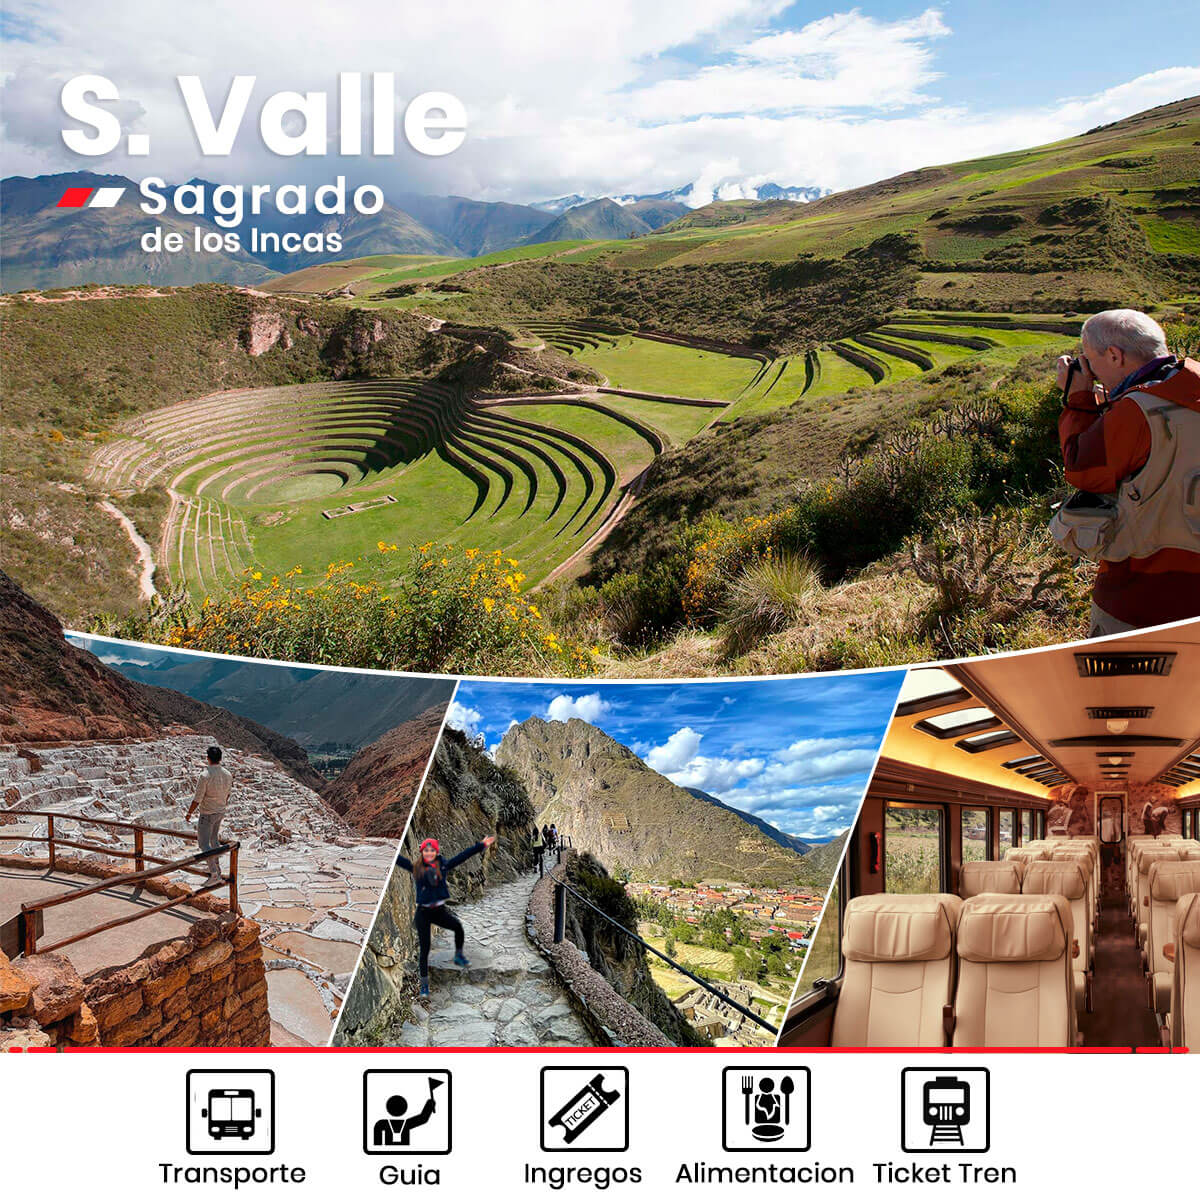 Tour super Valle Sagrado de los incas con Tren wa.me/51964265060